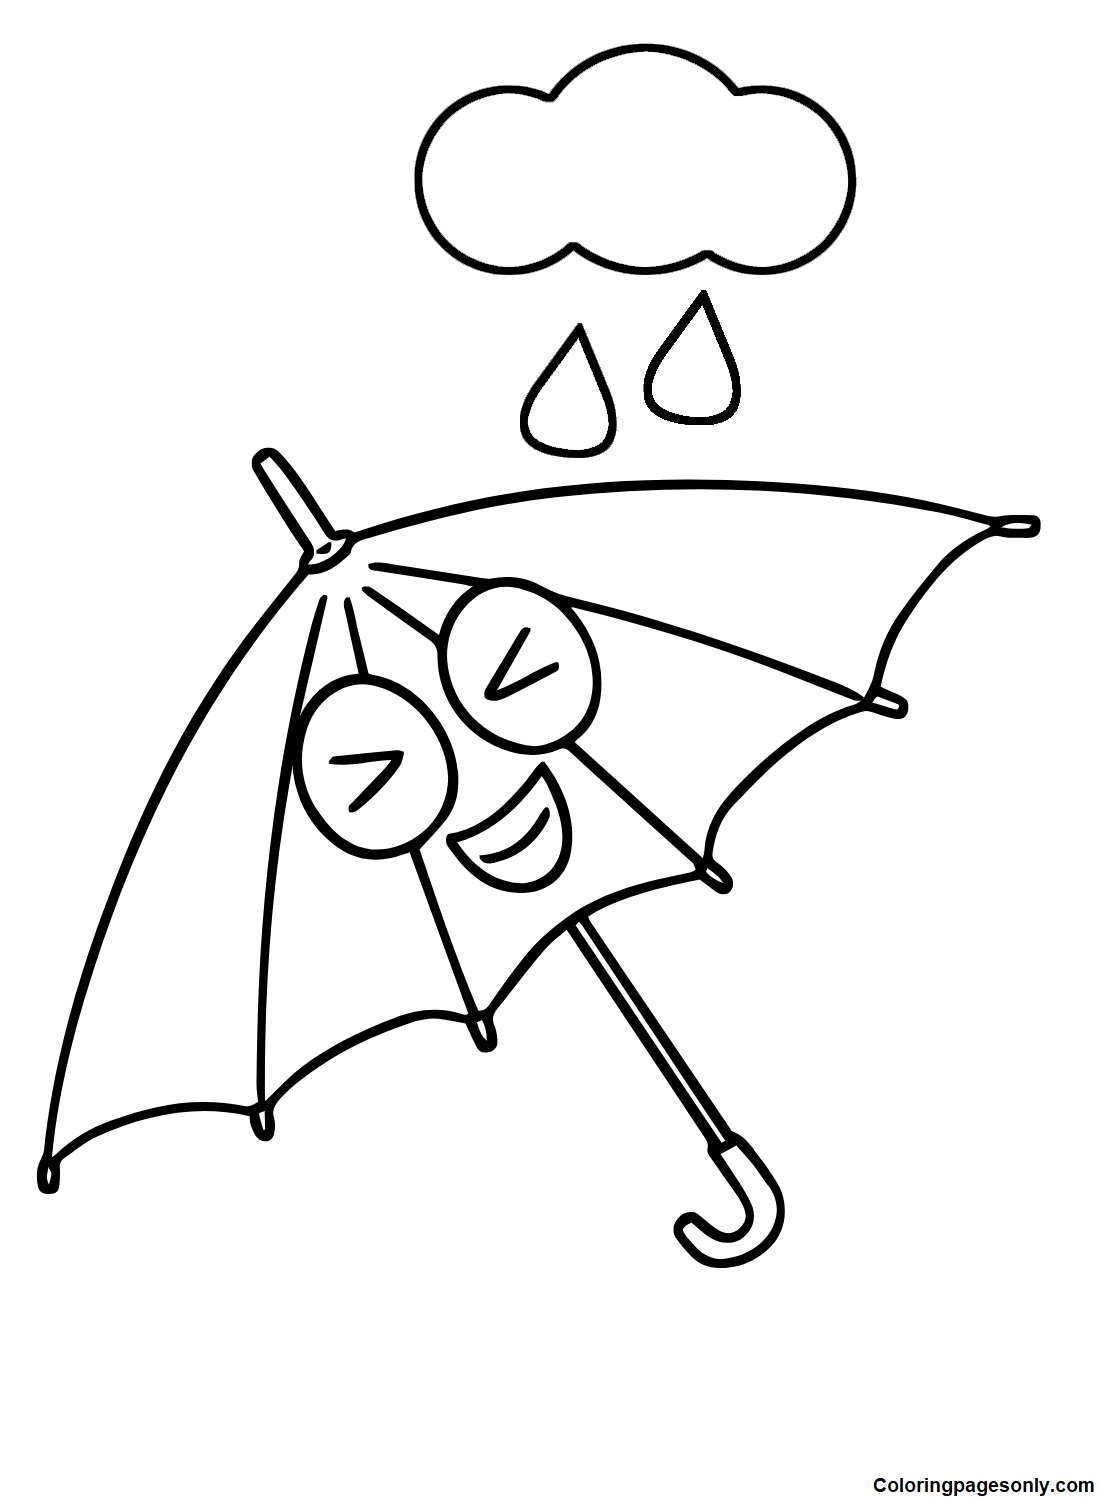 Guarda-chuva feliz from Umbrella